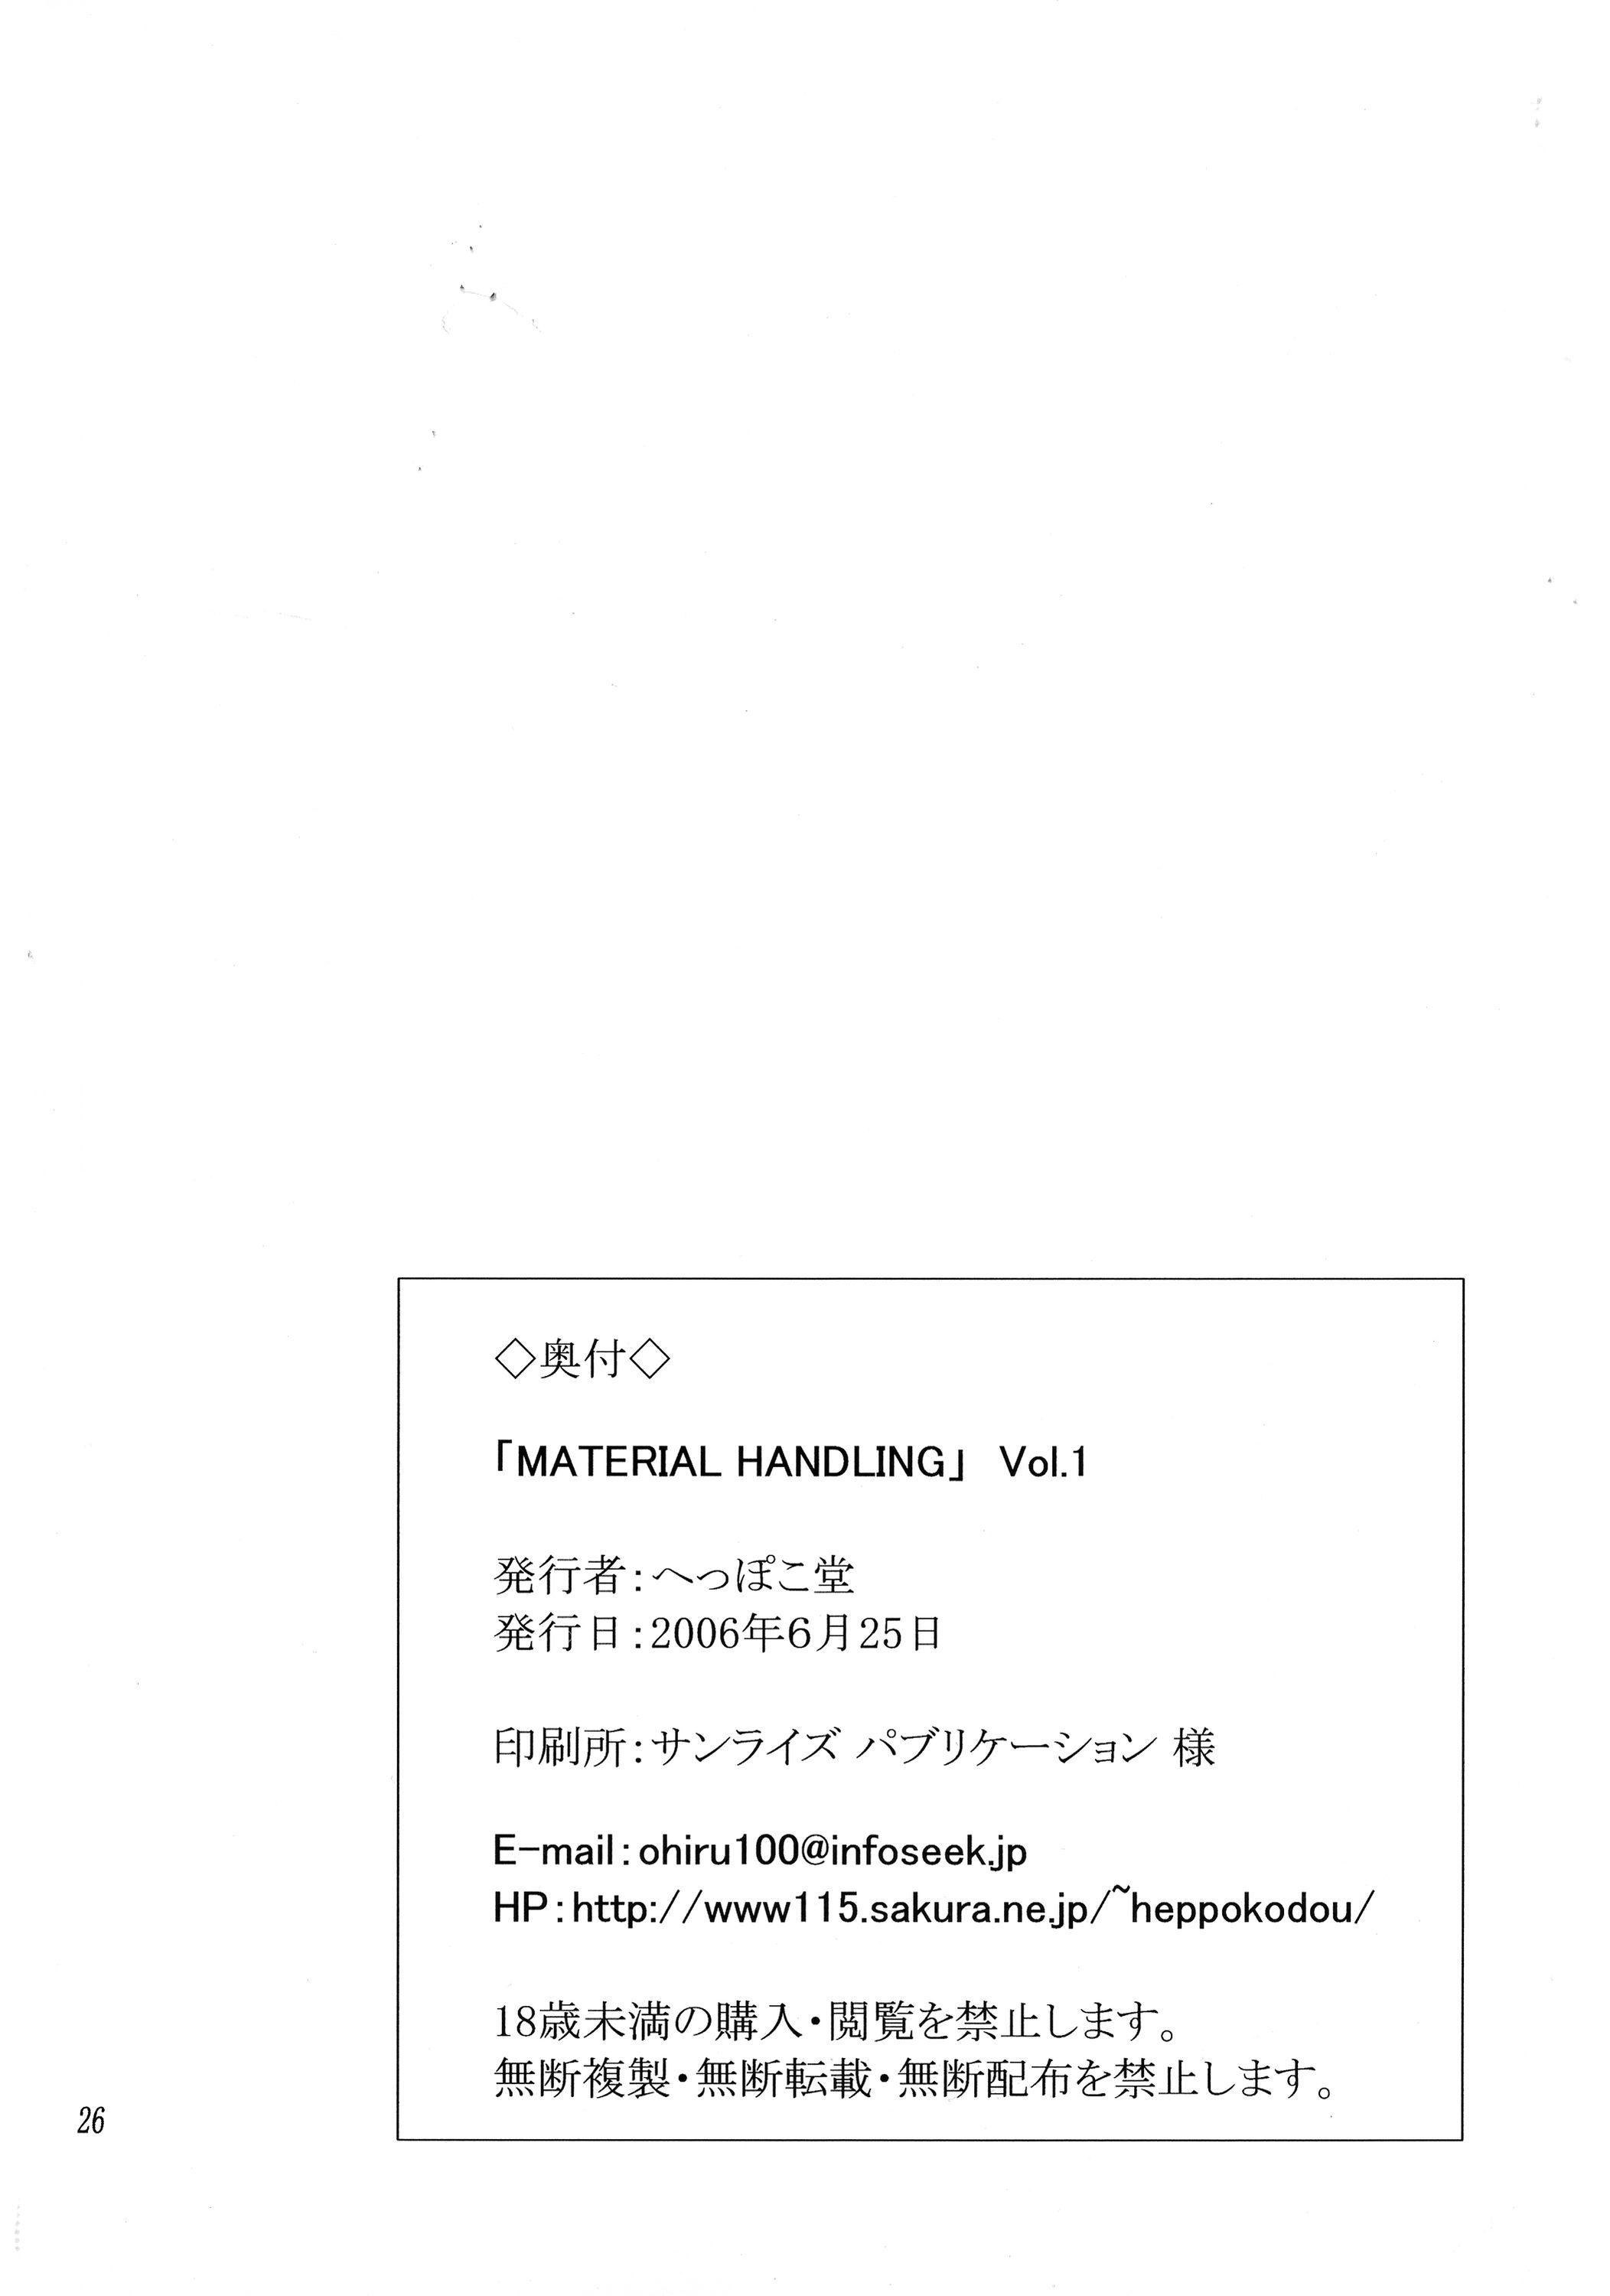 Material Handling Vol.1 25